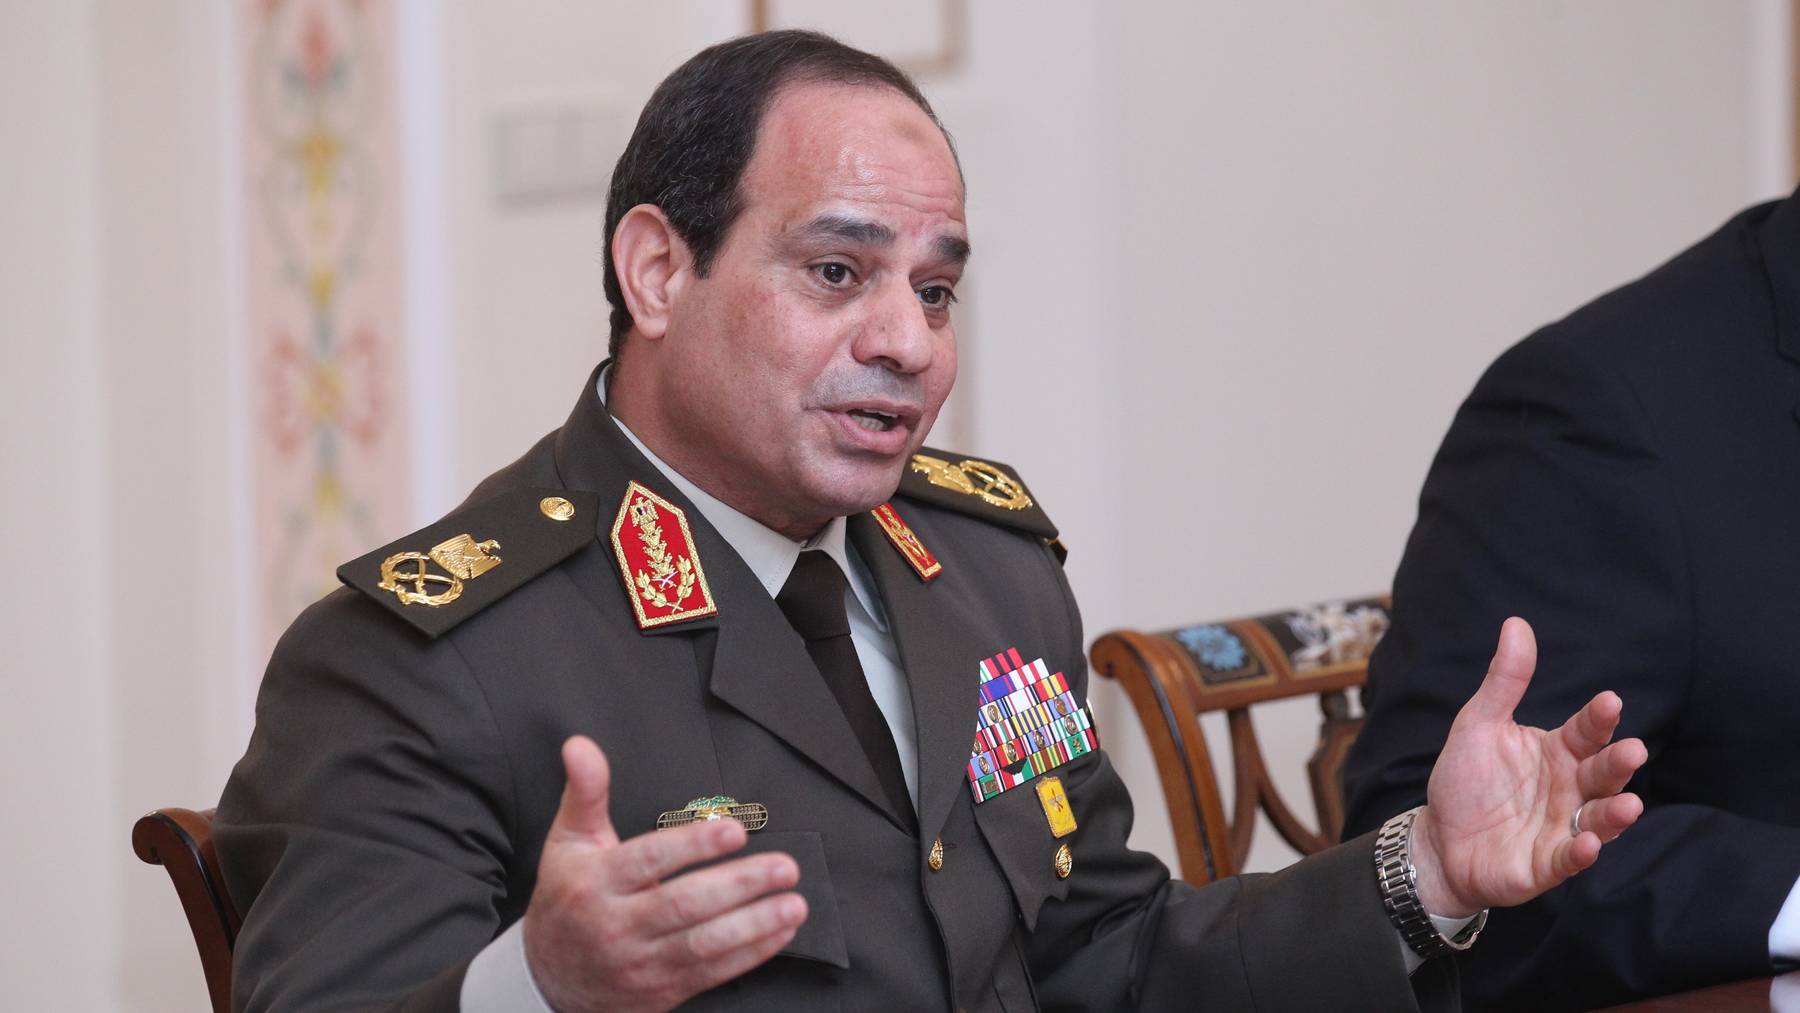  Ägypten unter Präsident Abdel Fattah al-Sisi steht seit langem wegen massiver Verstösse gegen grundlegende Menschenrechte international in der Kritik. (Archiv)